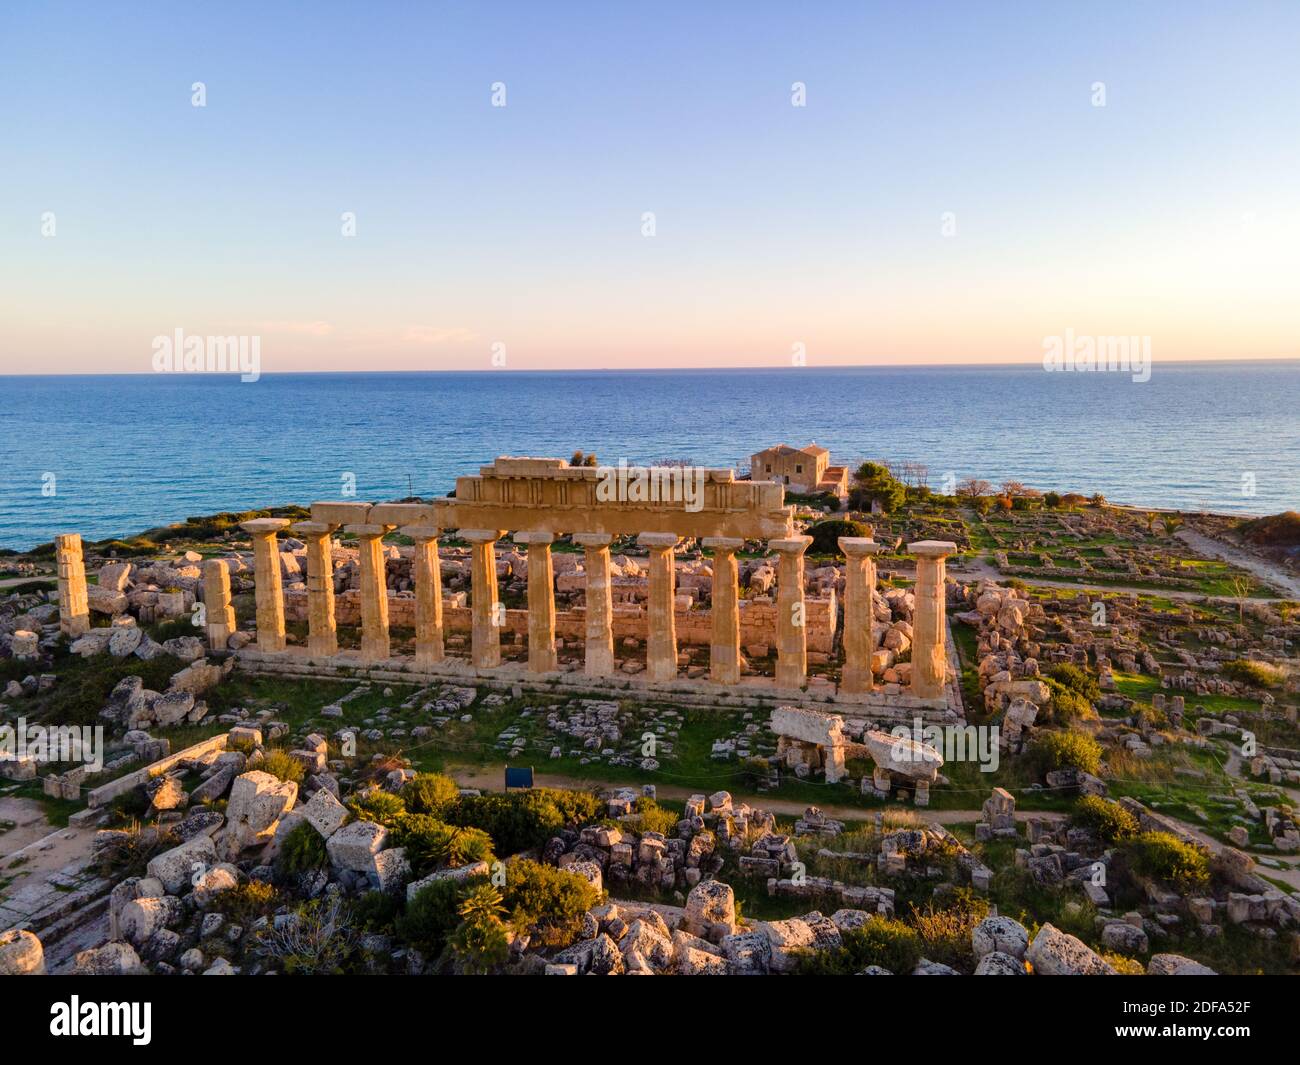 Griechische Tempel in Selinunte, Blick auf Meer und Ruinen griechischer Säulen im Archäologischen Park Selinunte Sizilien Italien Stockfoto